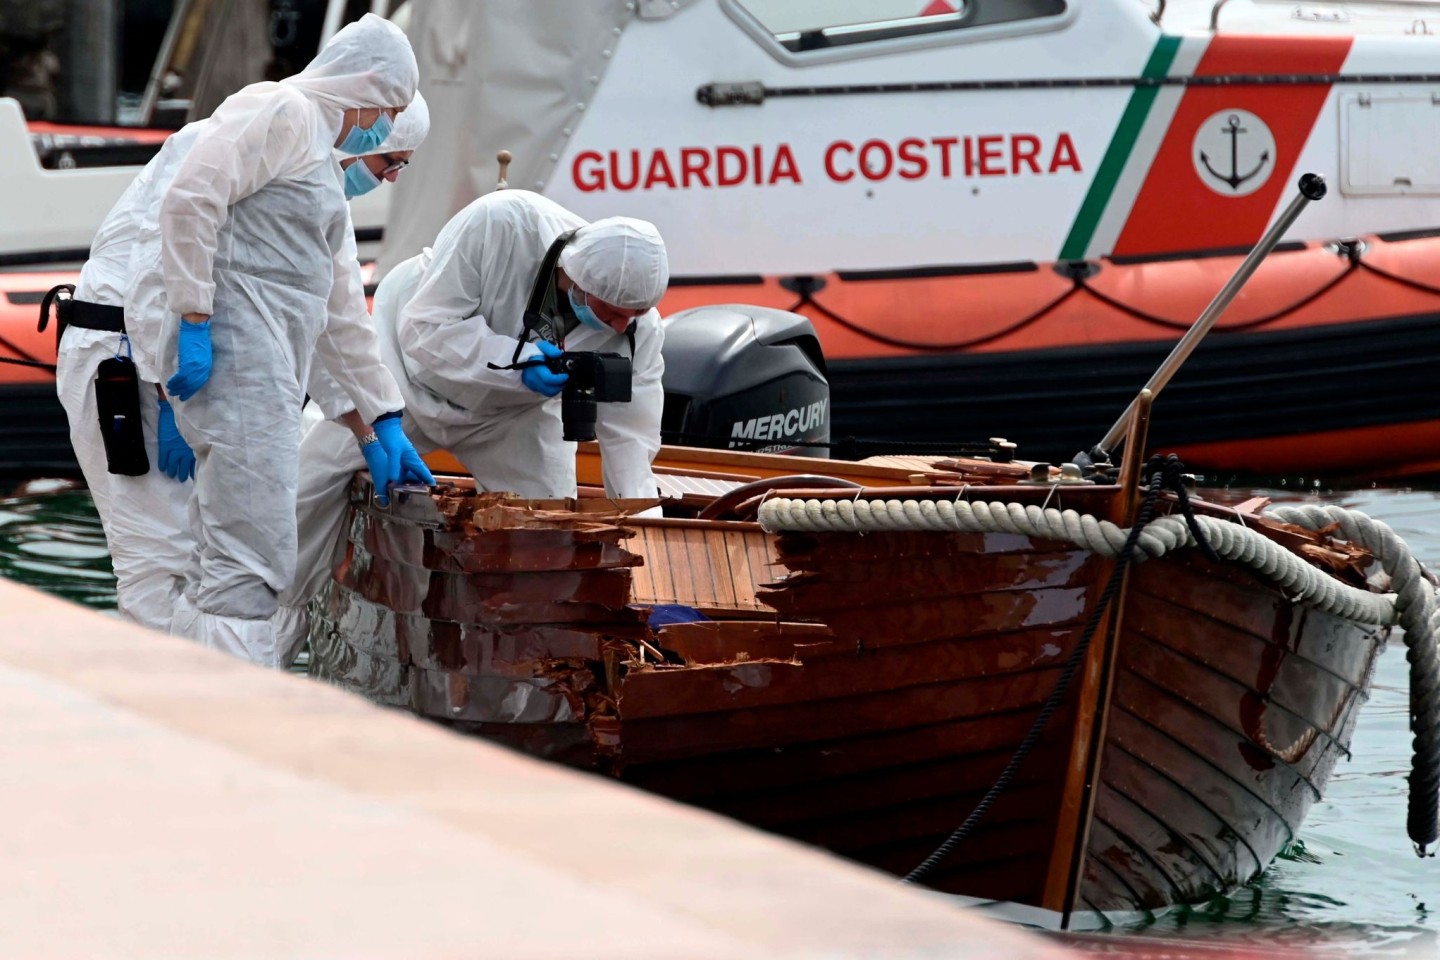 Italienische Forensiker begutachten den Schaden an dem Holzboot.